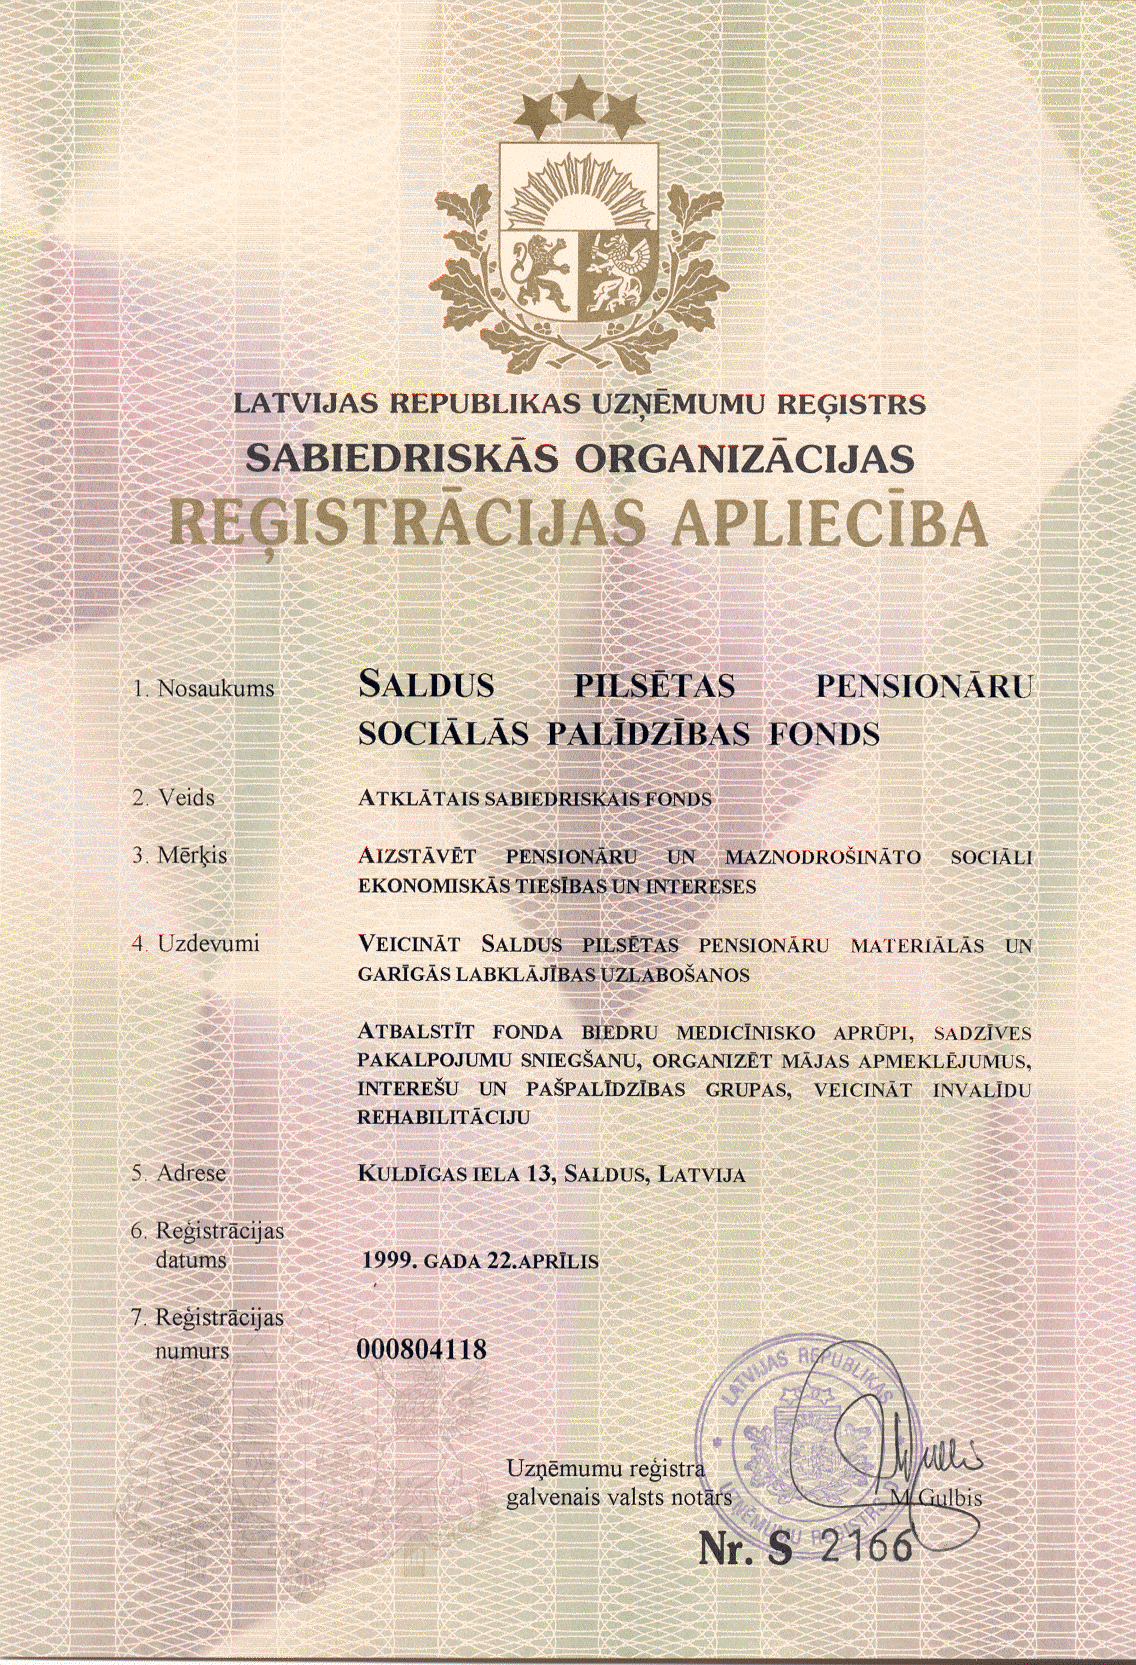 SPPSPF Certification